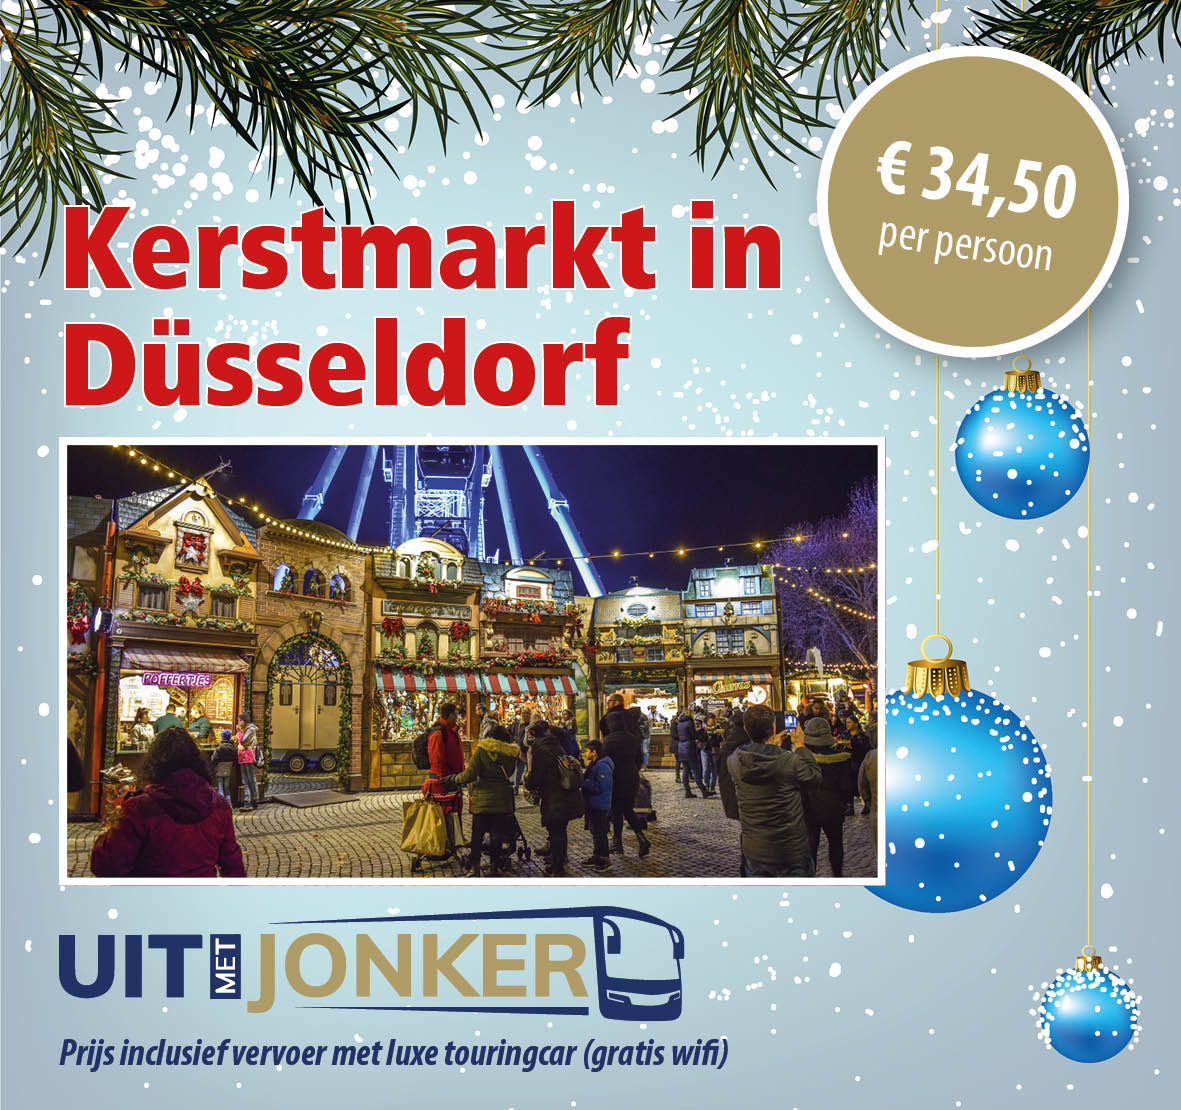 Dagtocht kerstmarkt Dusseldorf